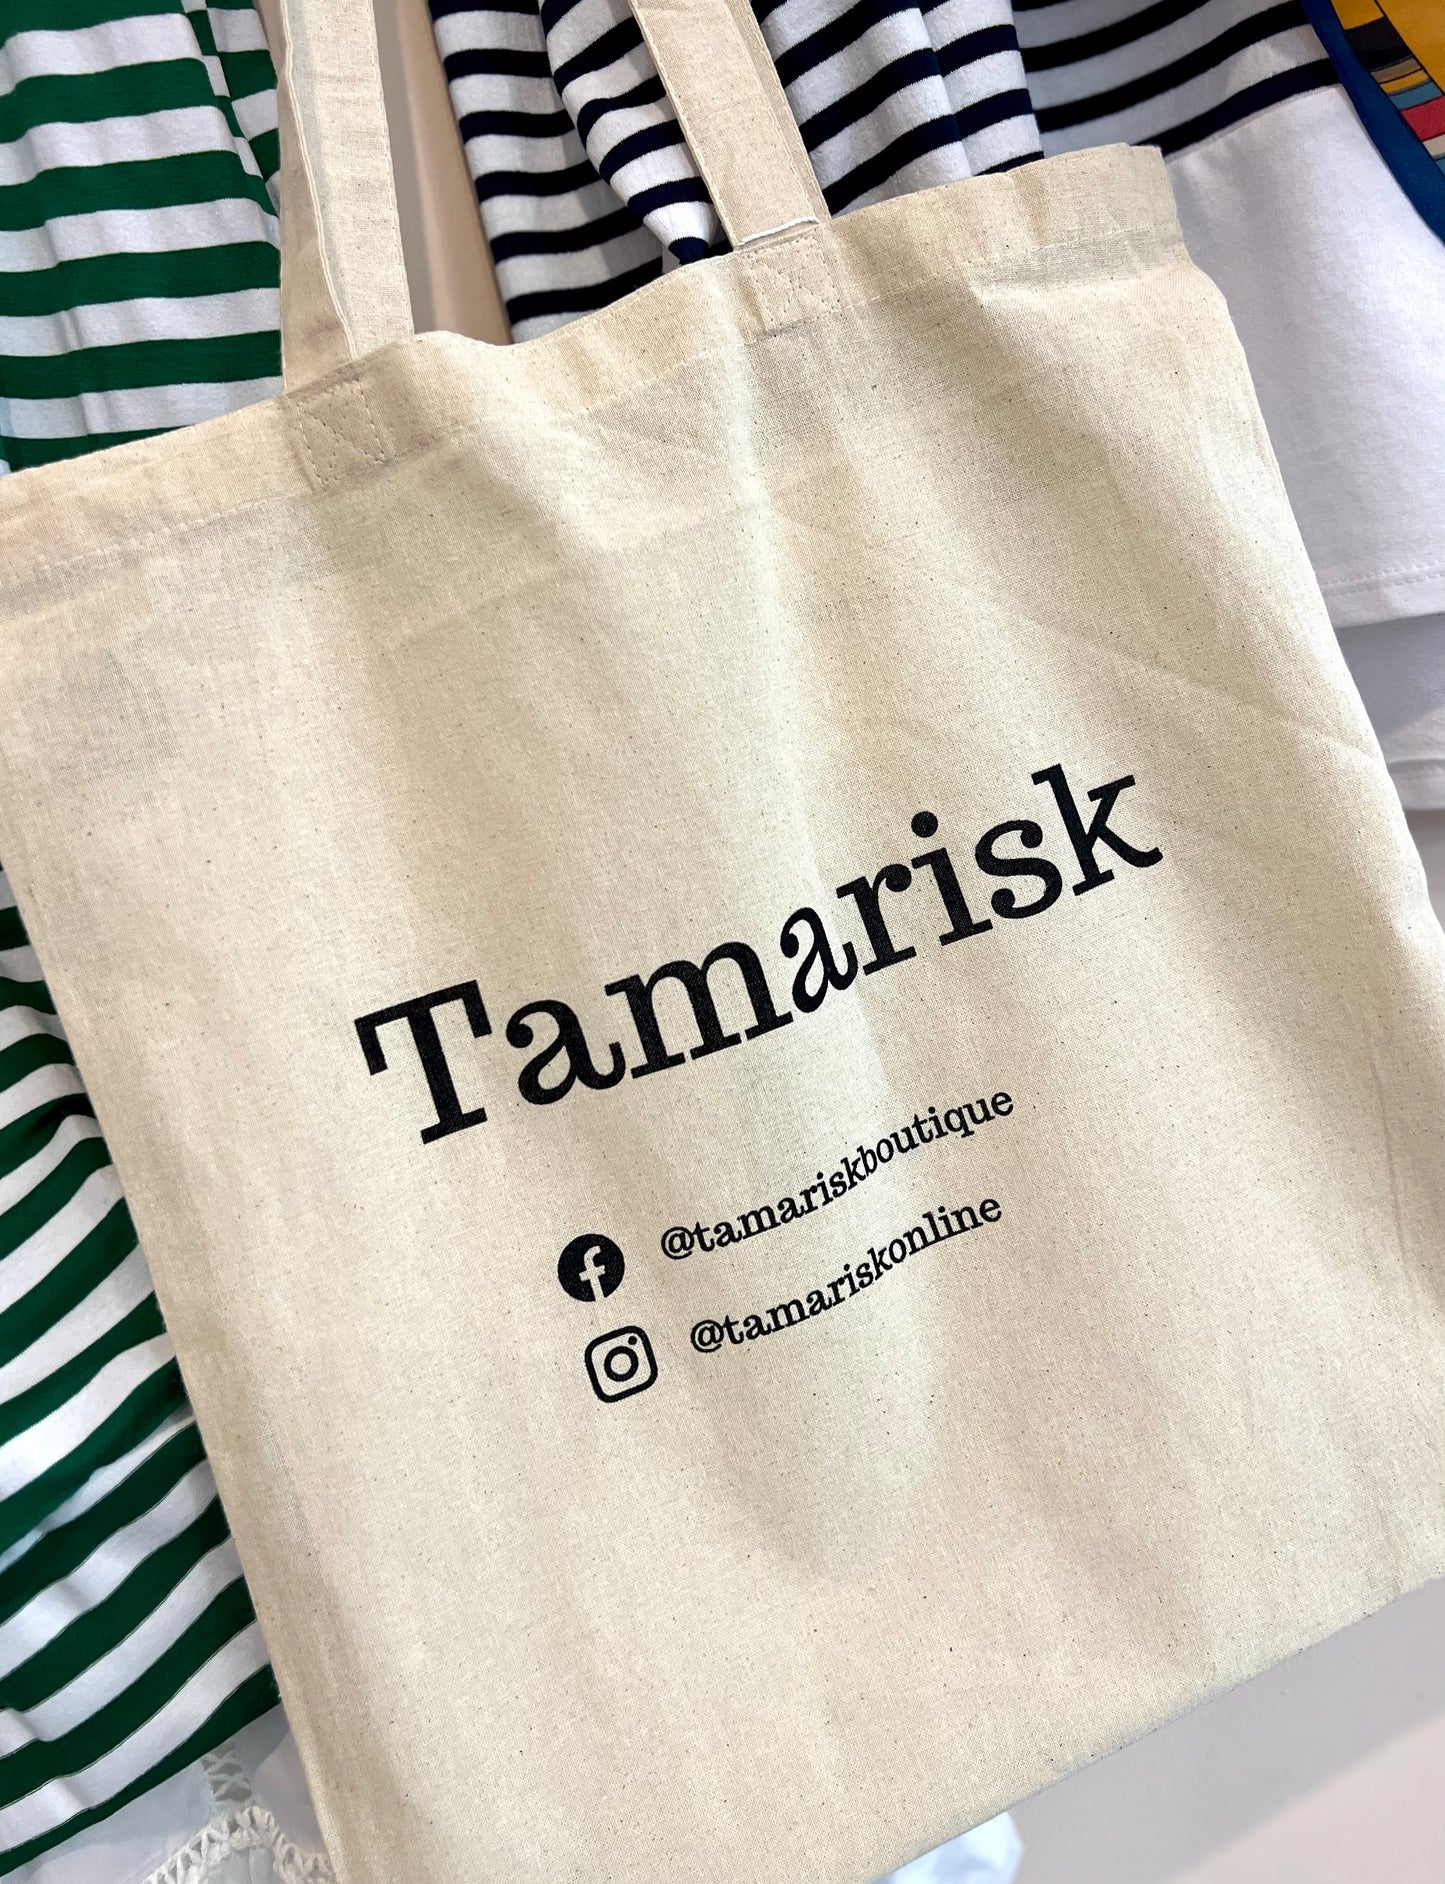 Essential Tamarisk Tote Bag - Cotton